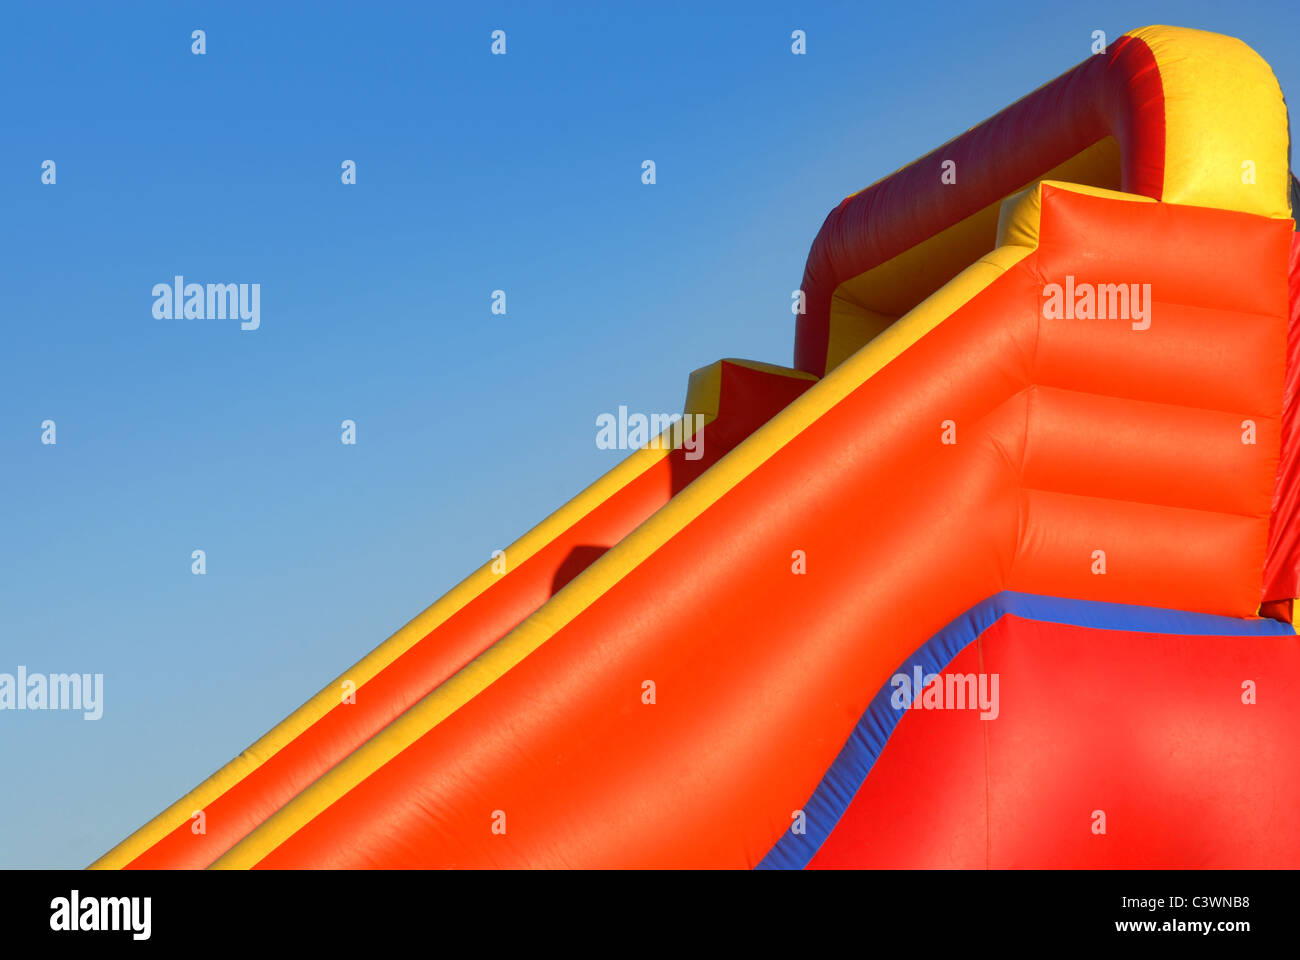 Visualizzare gonfiabili colorati blow-up giocattolo sul cielo blu sullo sfondo Foto Stock